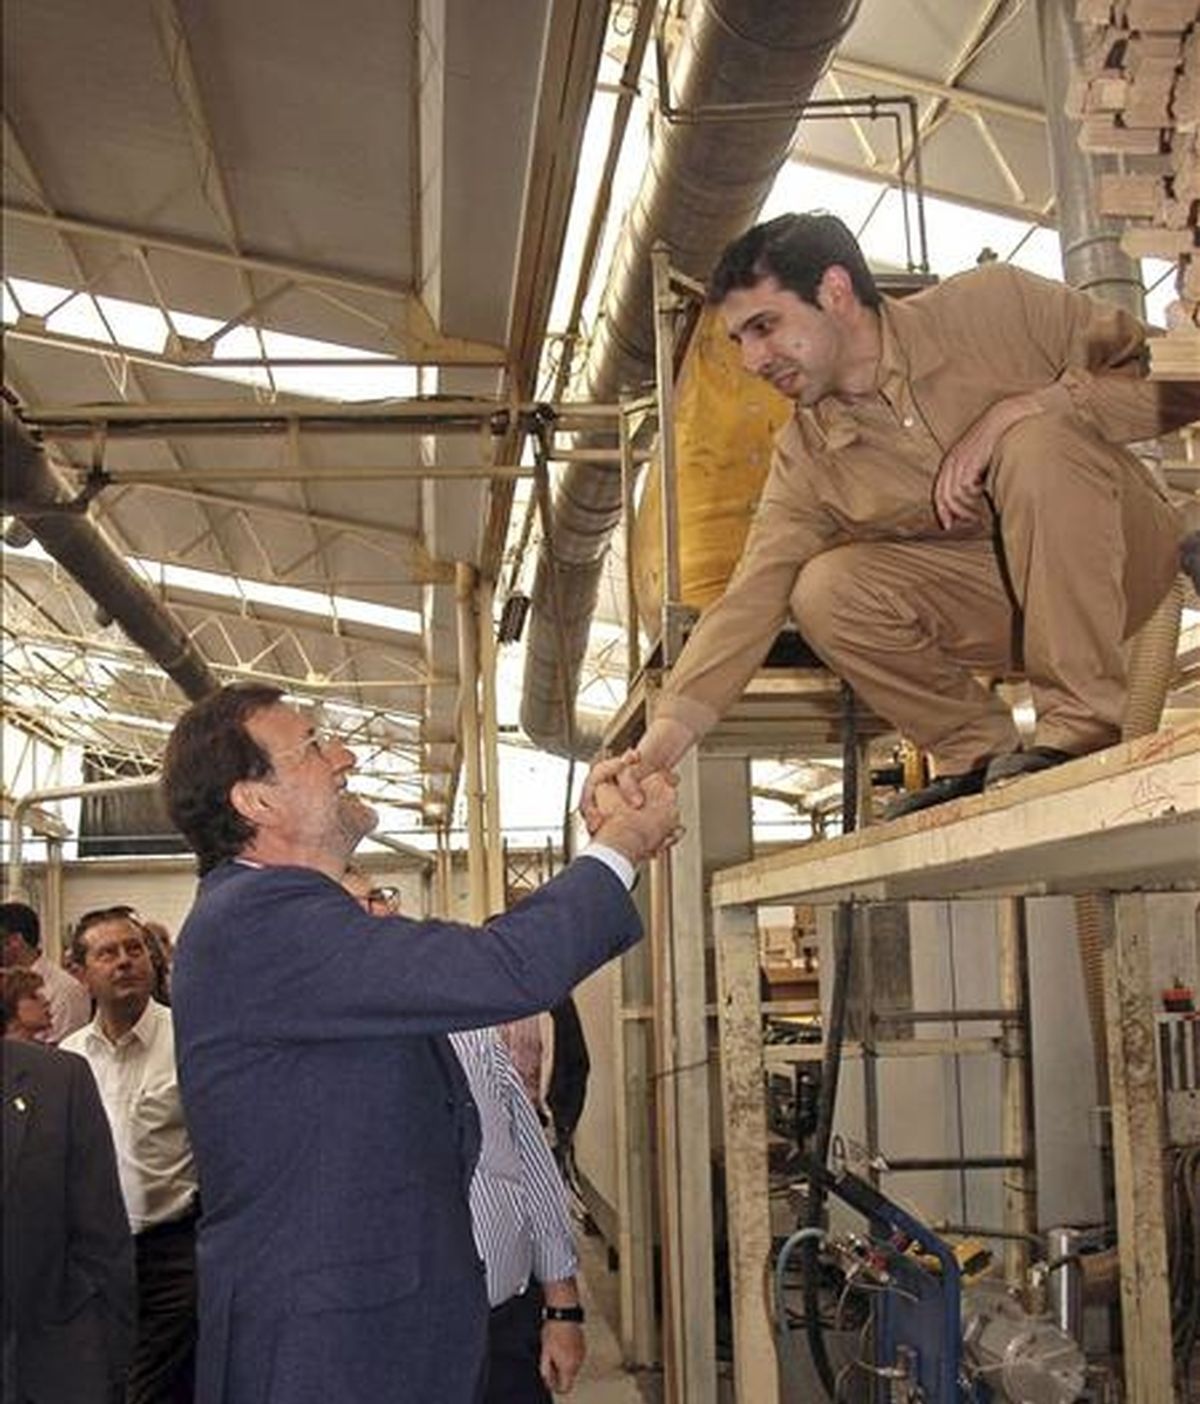 El presidente del Partido Popular, Mariano Rajoy, saluda un trabajador, durante su visita a una fábrica de puertas de la localidad toledana de Villacañas. EFE